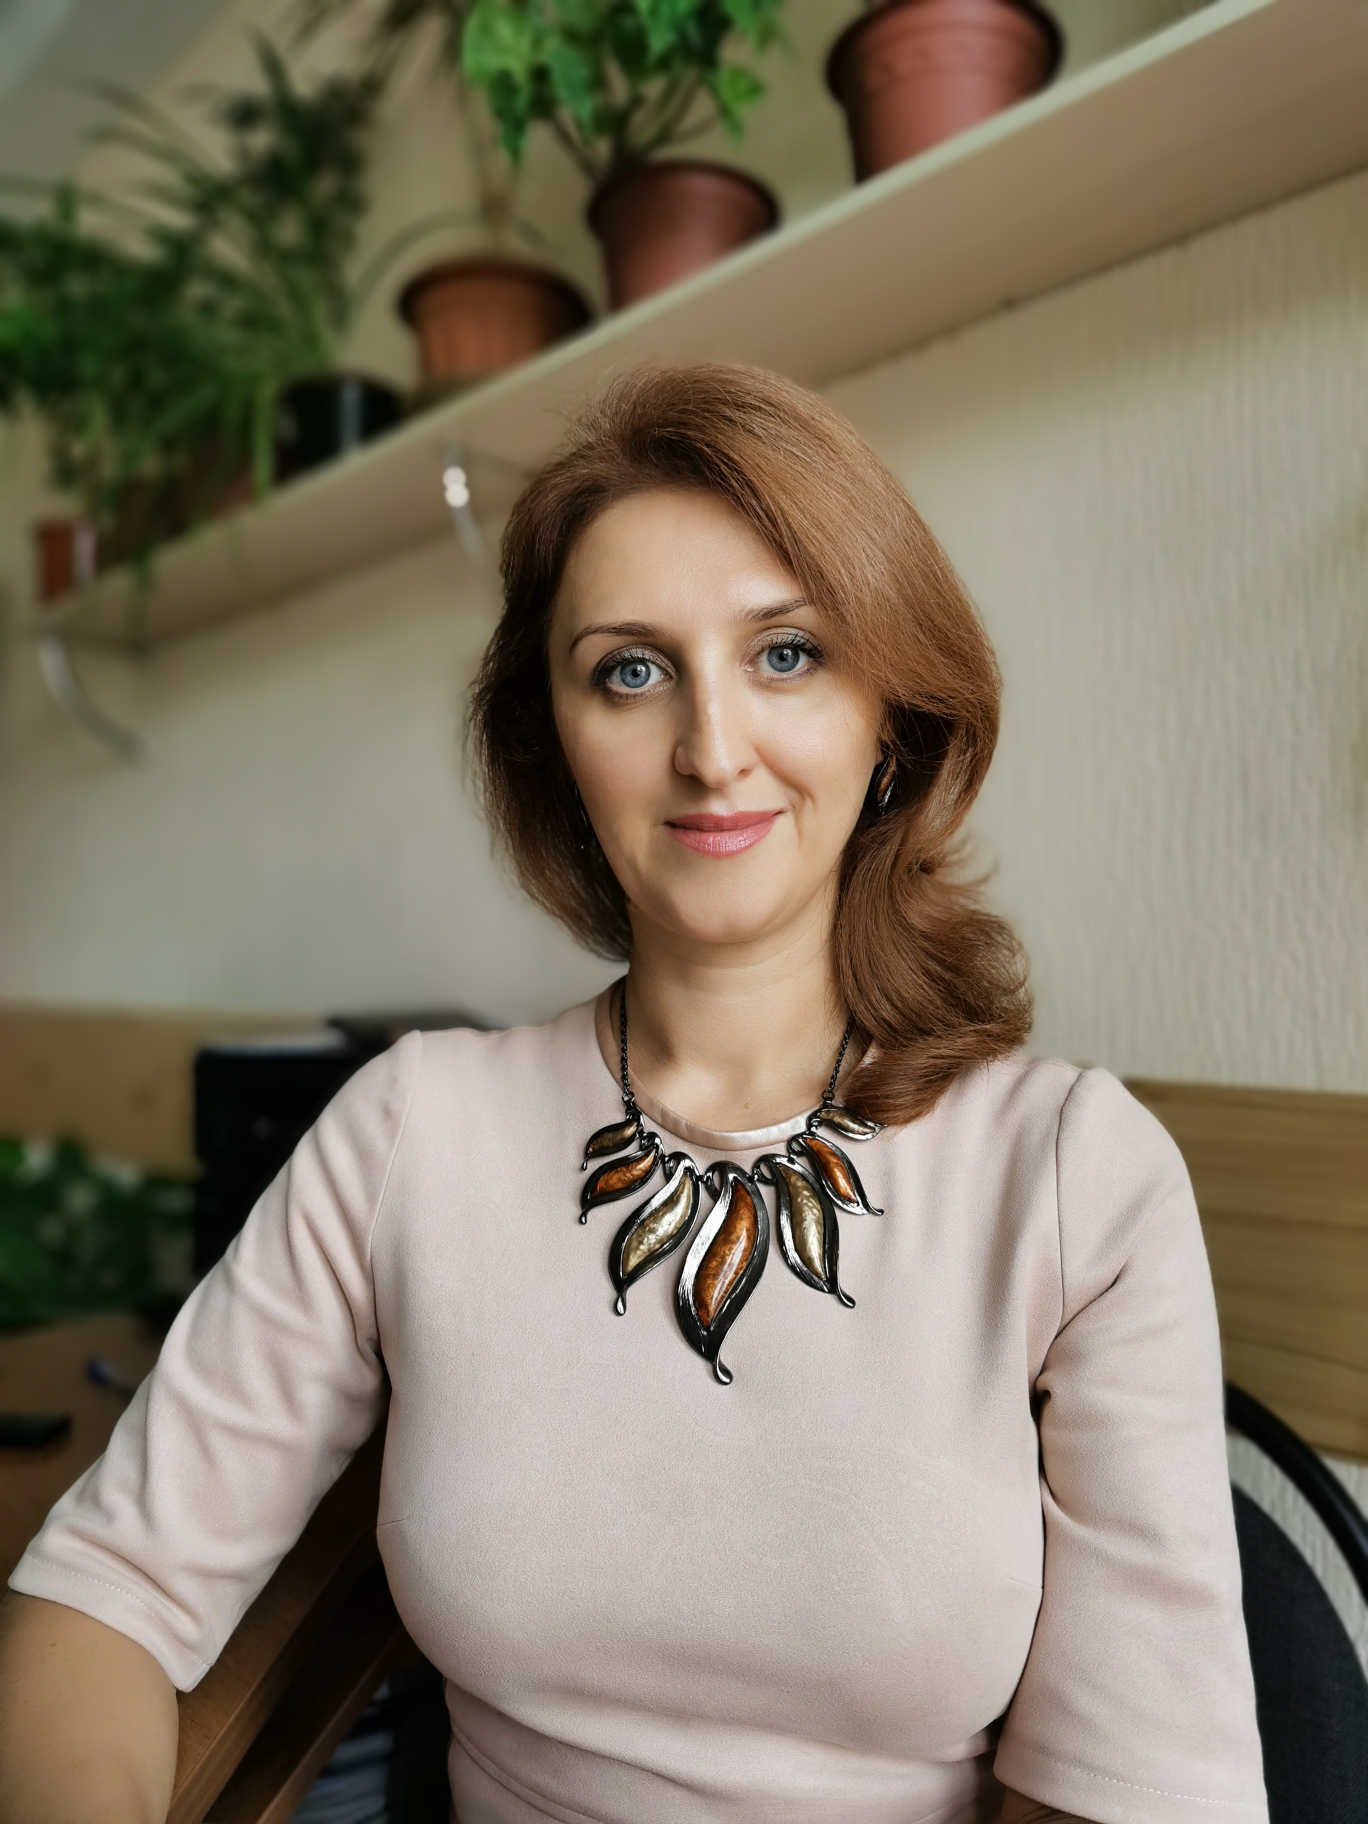 Григорьева Ольга Александровна - бухгалтер